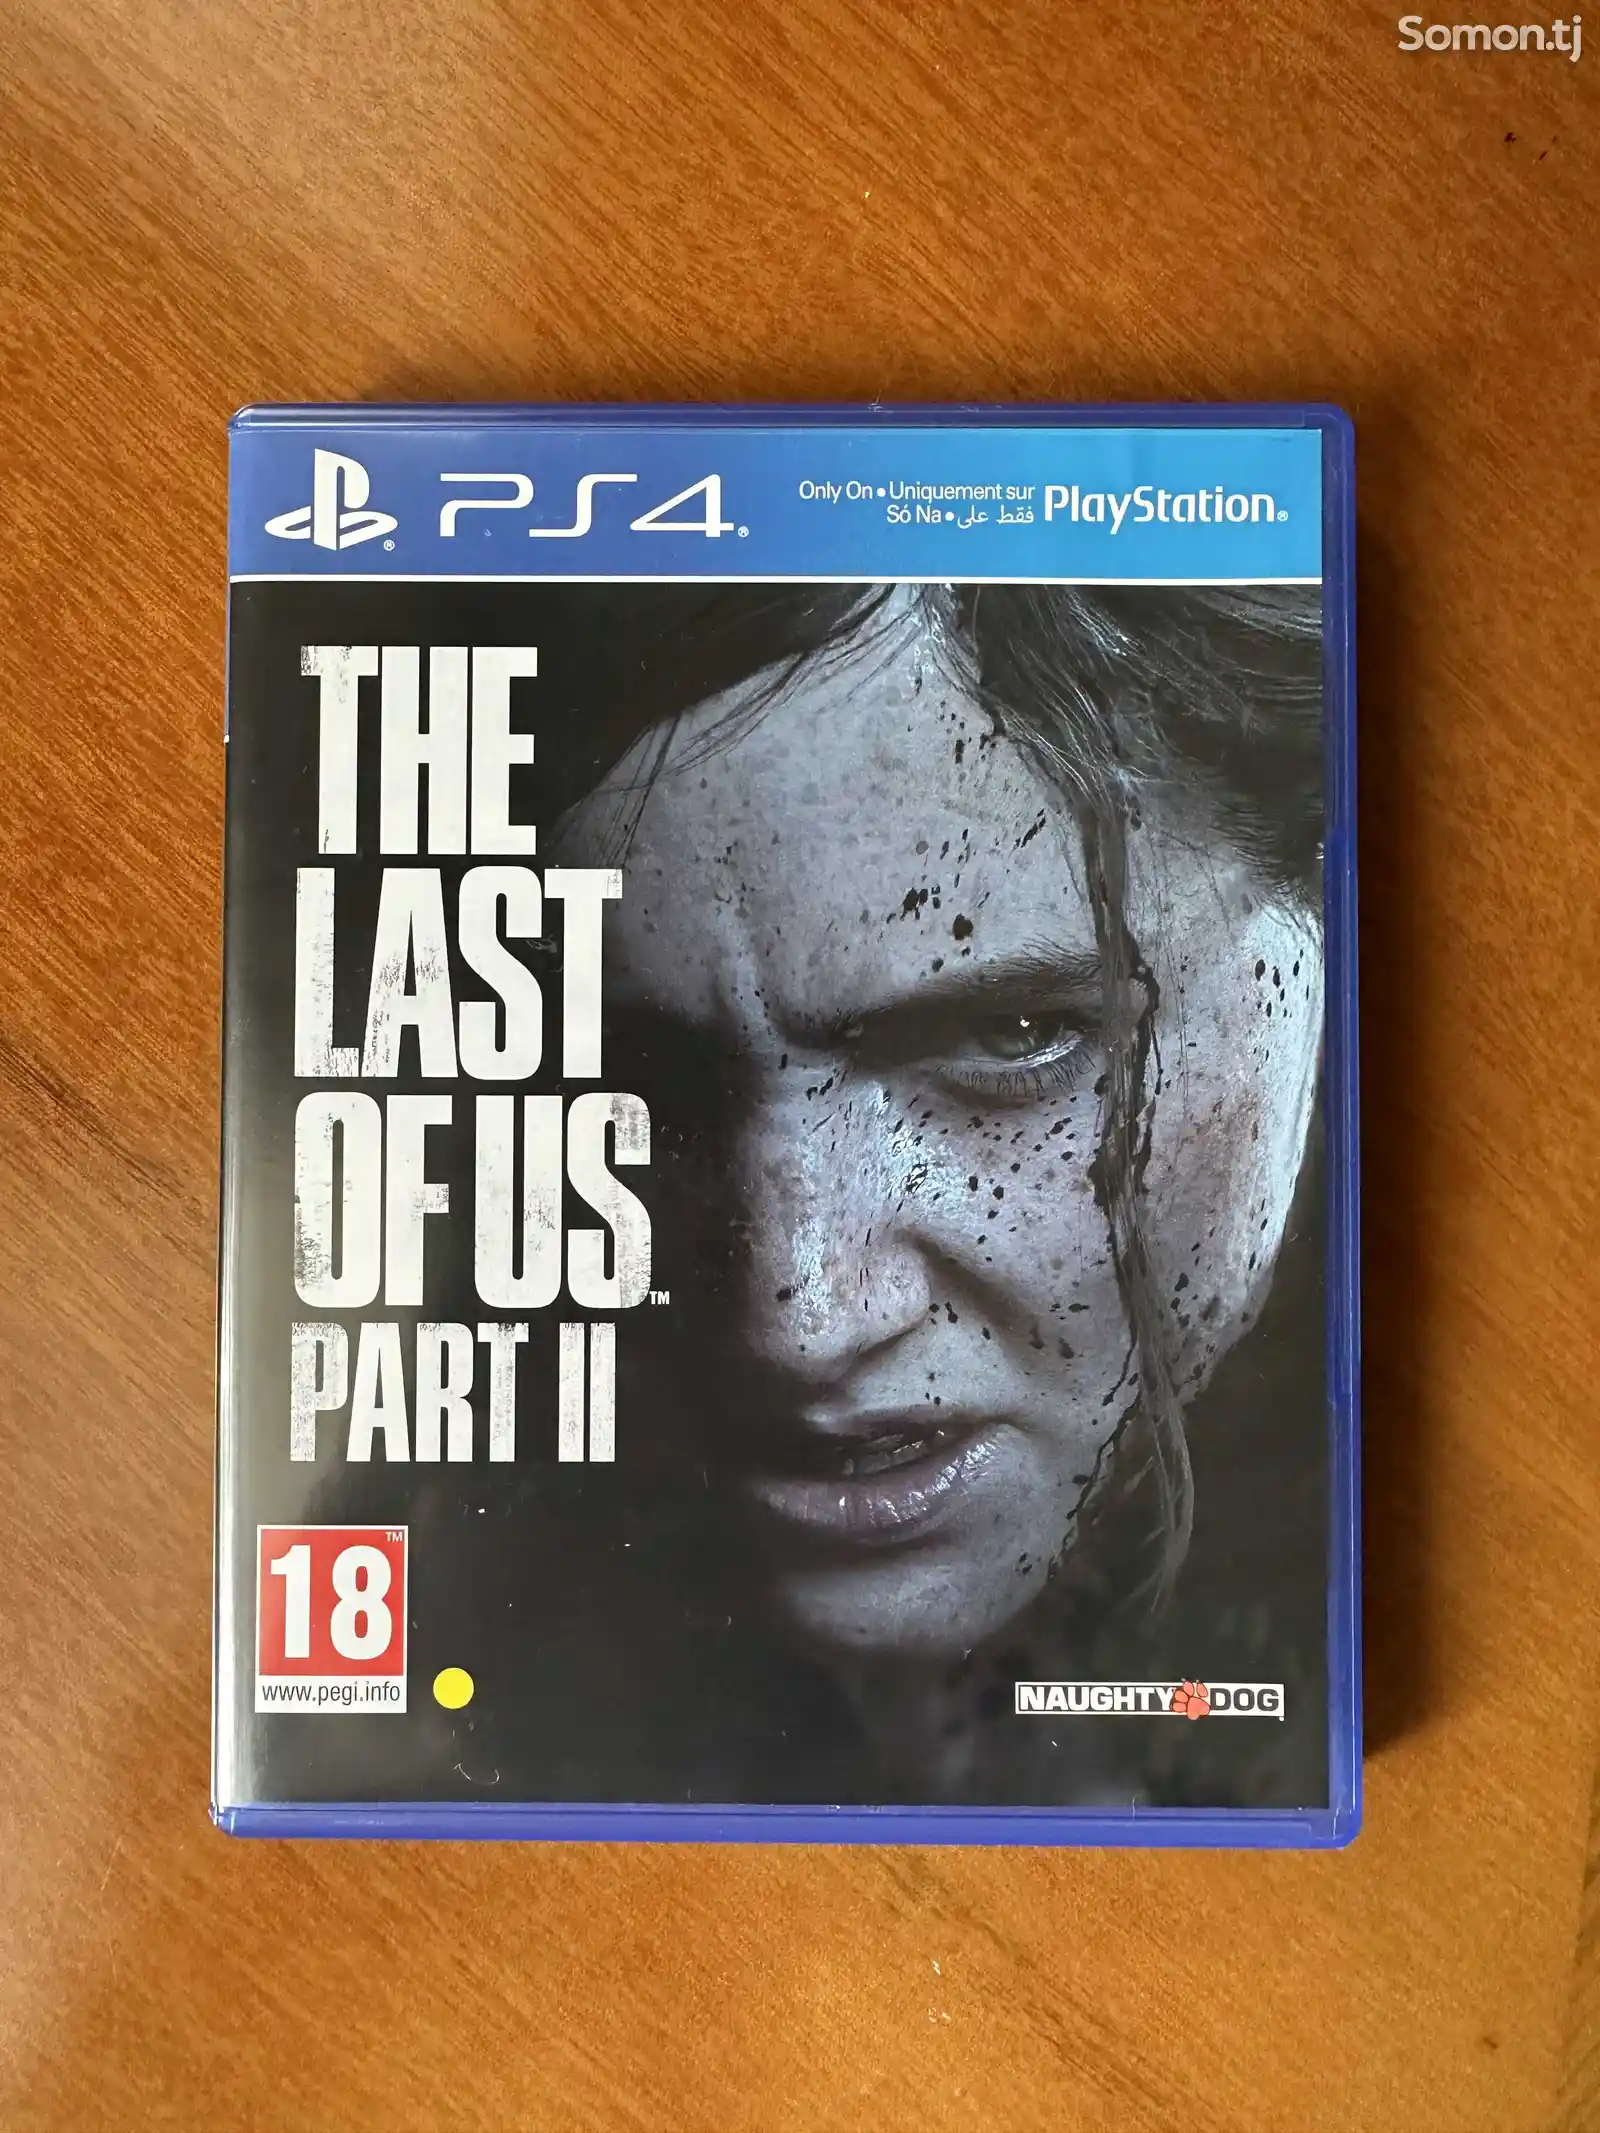 Игра The last of us 2 игра для приставки PS4-1